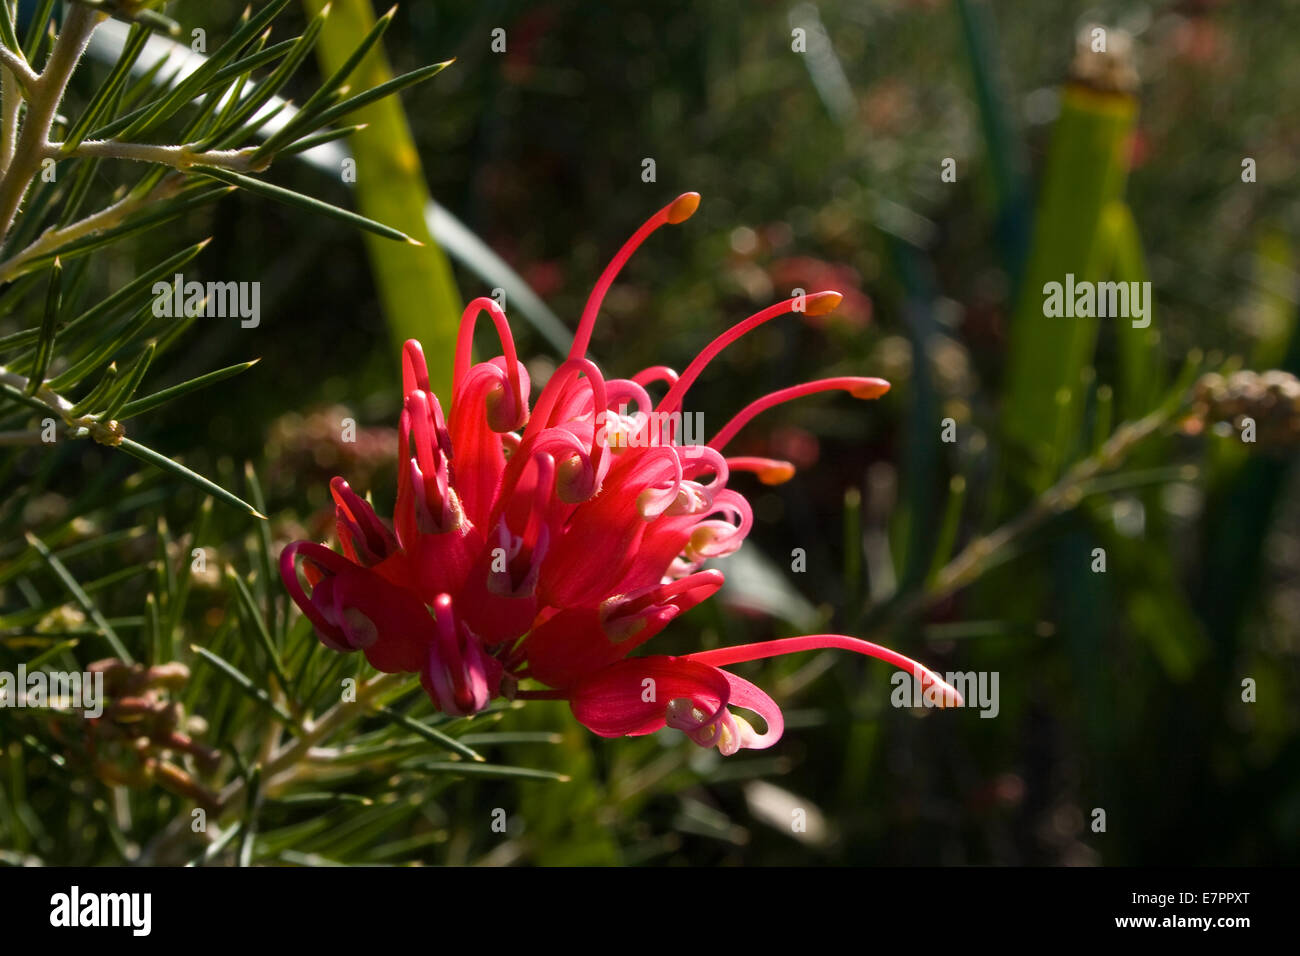 Australian flower, Grevillea in a garden Stock Photo